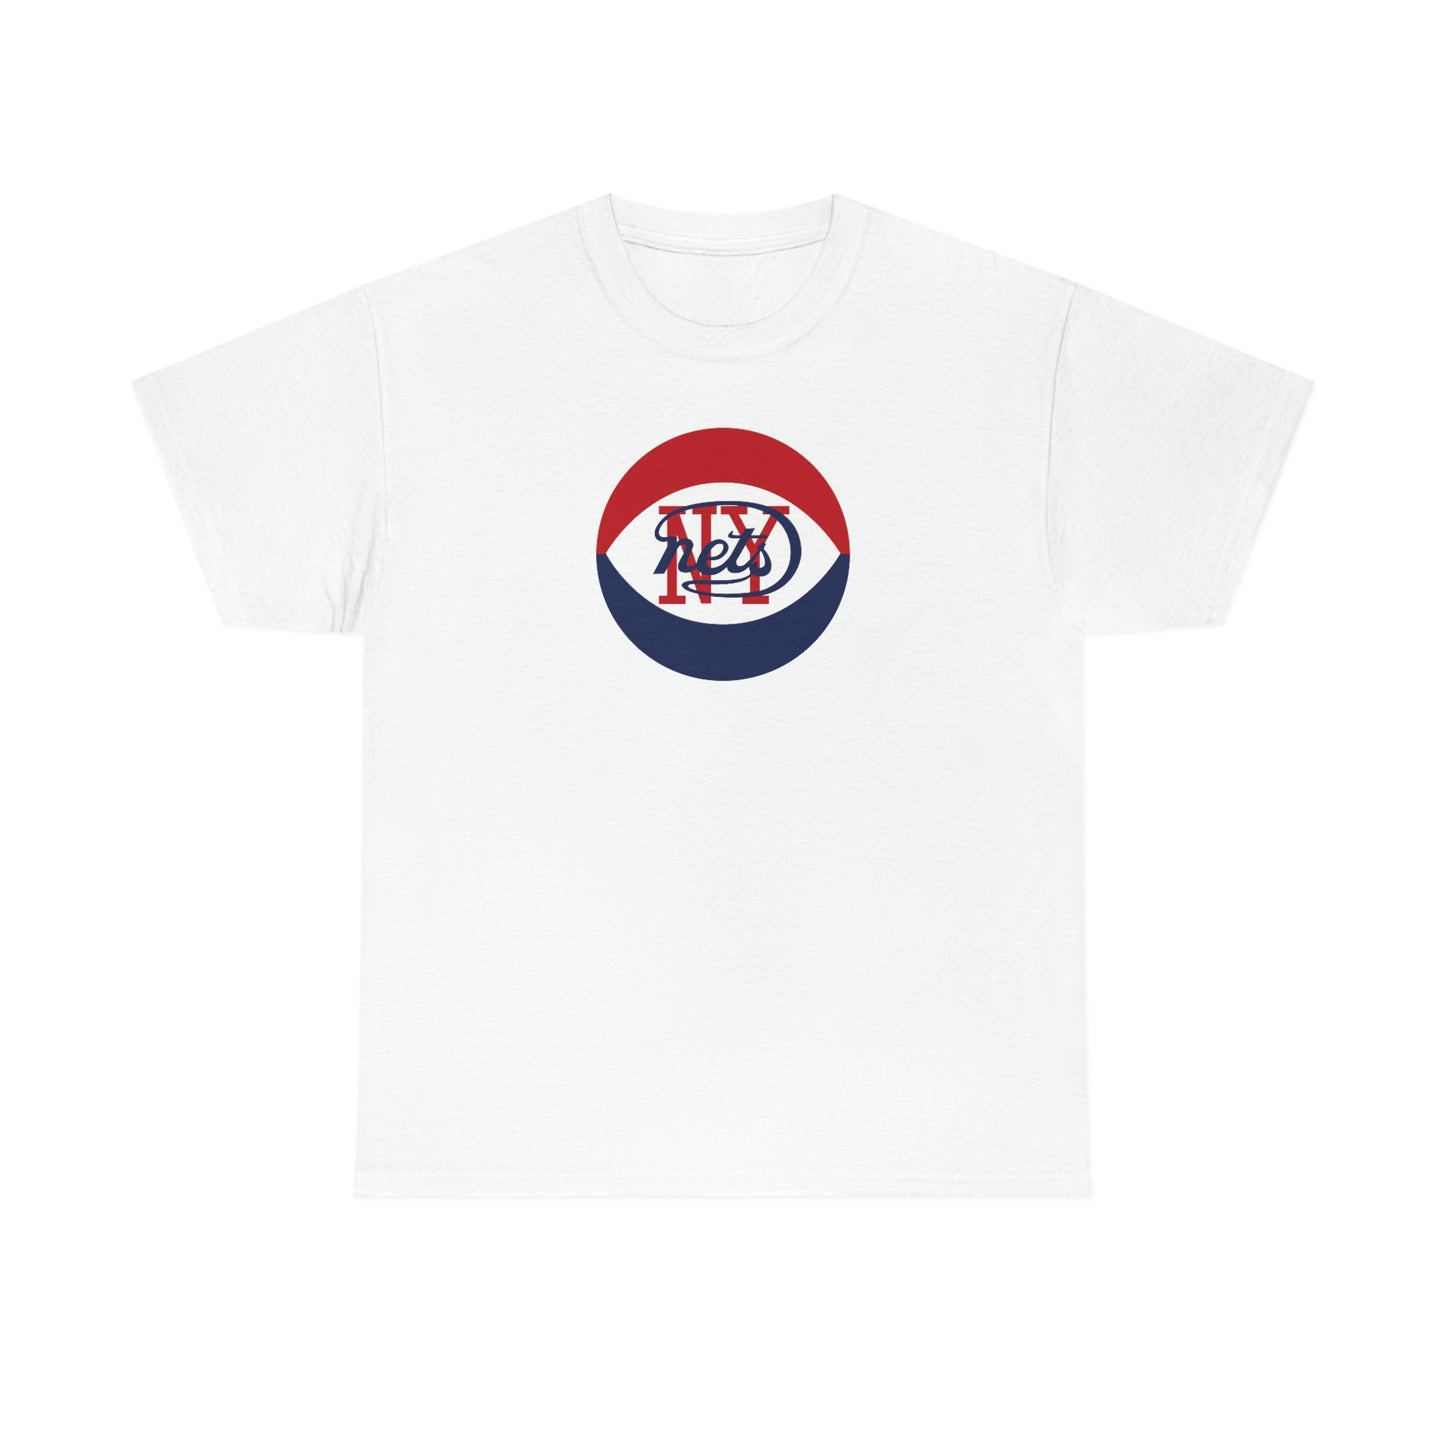 New York Nets T-Shirt